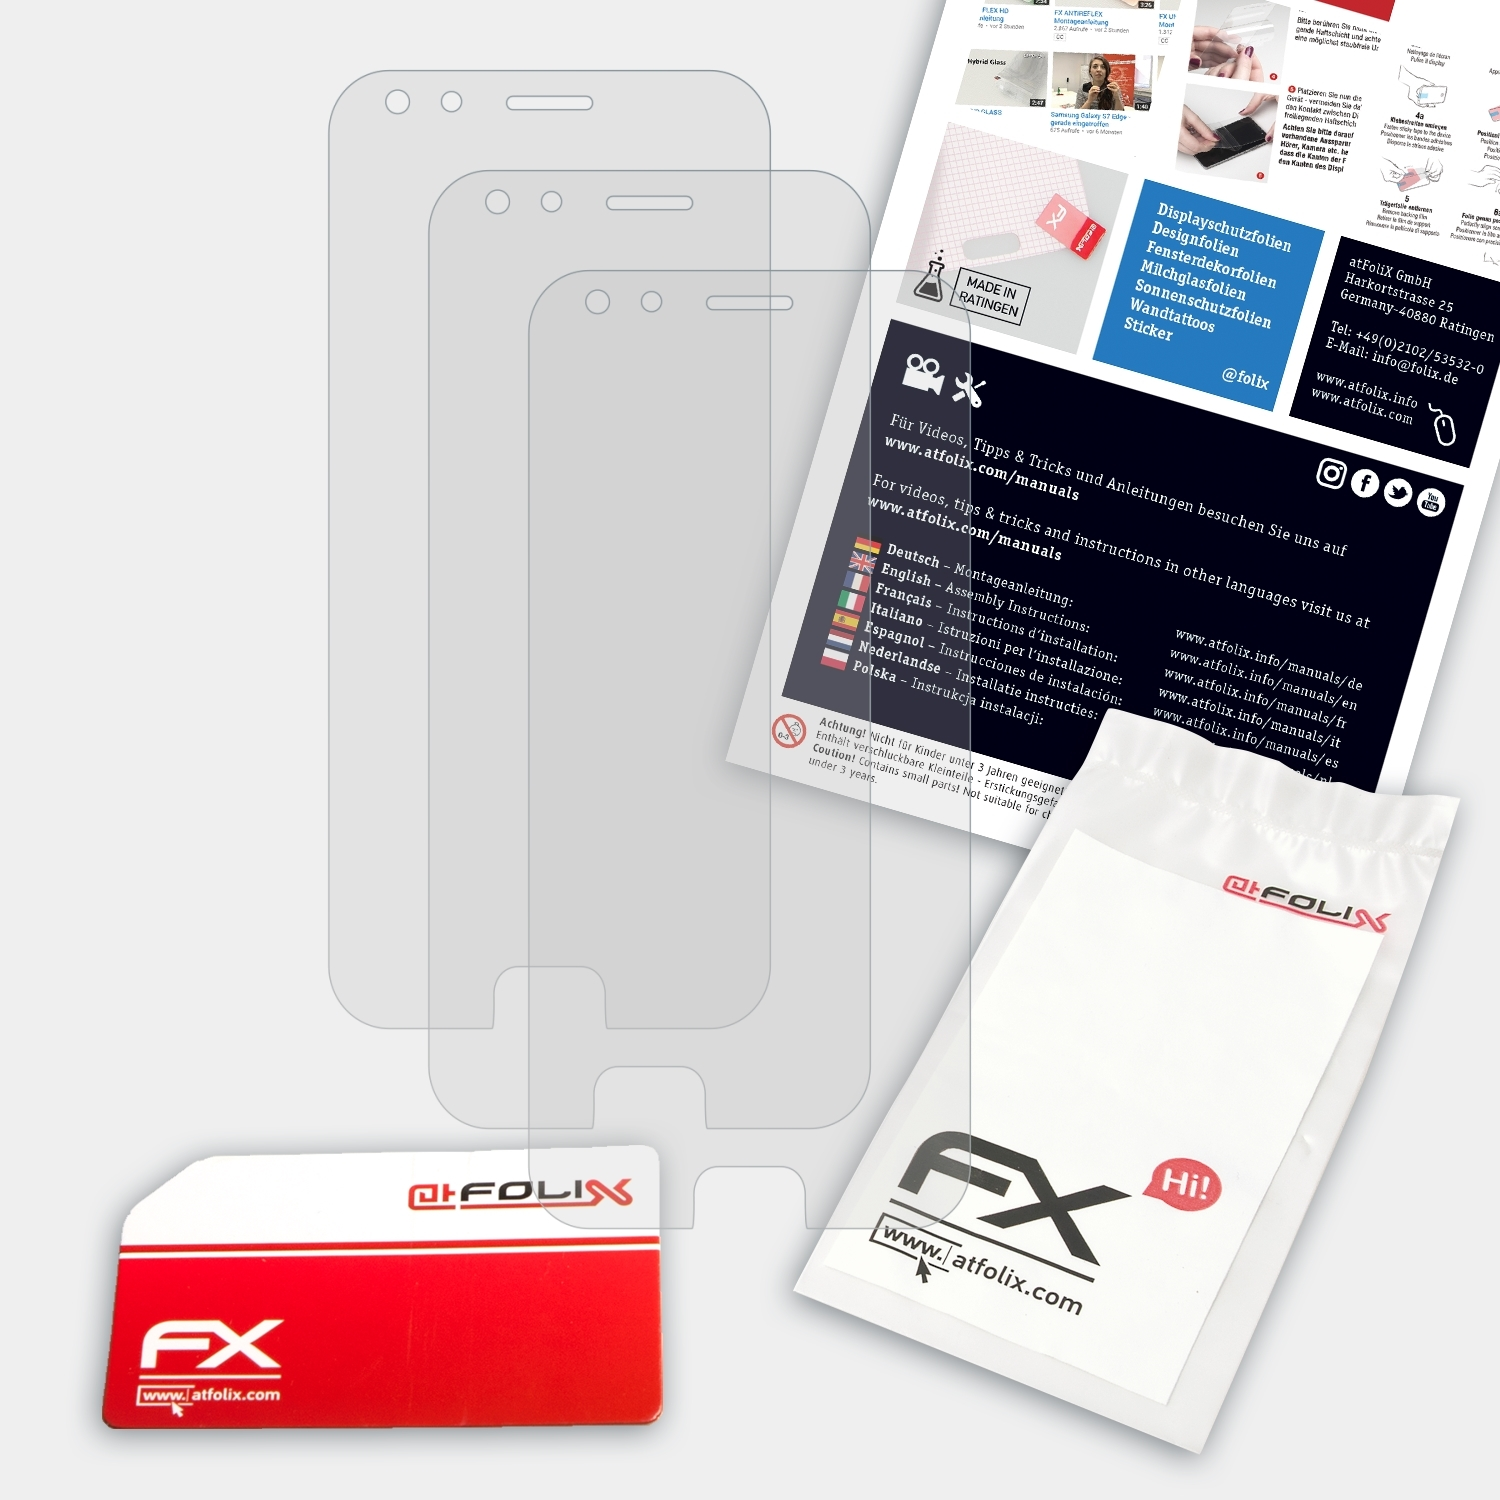 3x ATFOLIX 4 (ZS551KL)) Displayschutz(für ZenFone Pro Asus FX-Antireflex